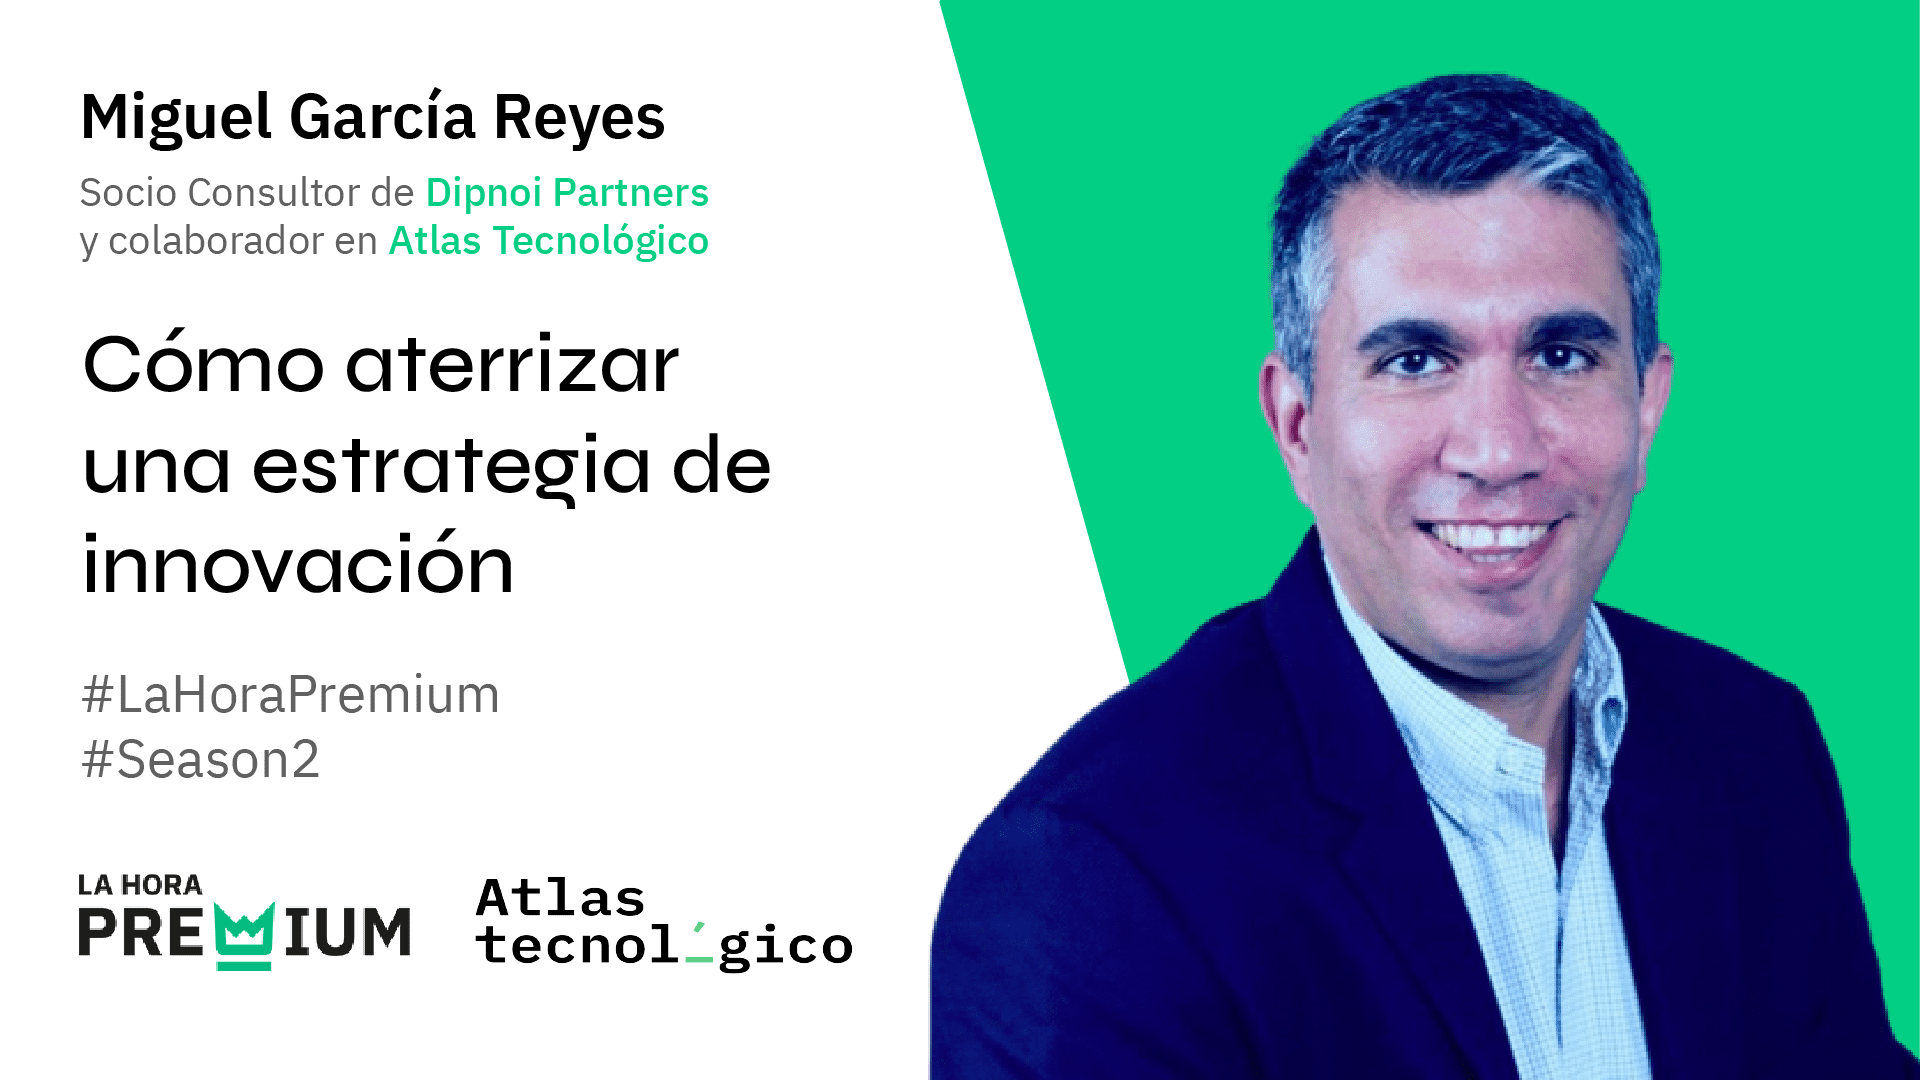 Miguel García Reyes hablará sobre cómo aterrizar una estrategia de innovación en La Hora Premium